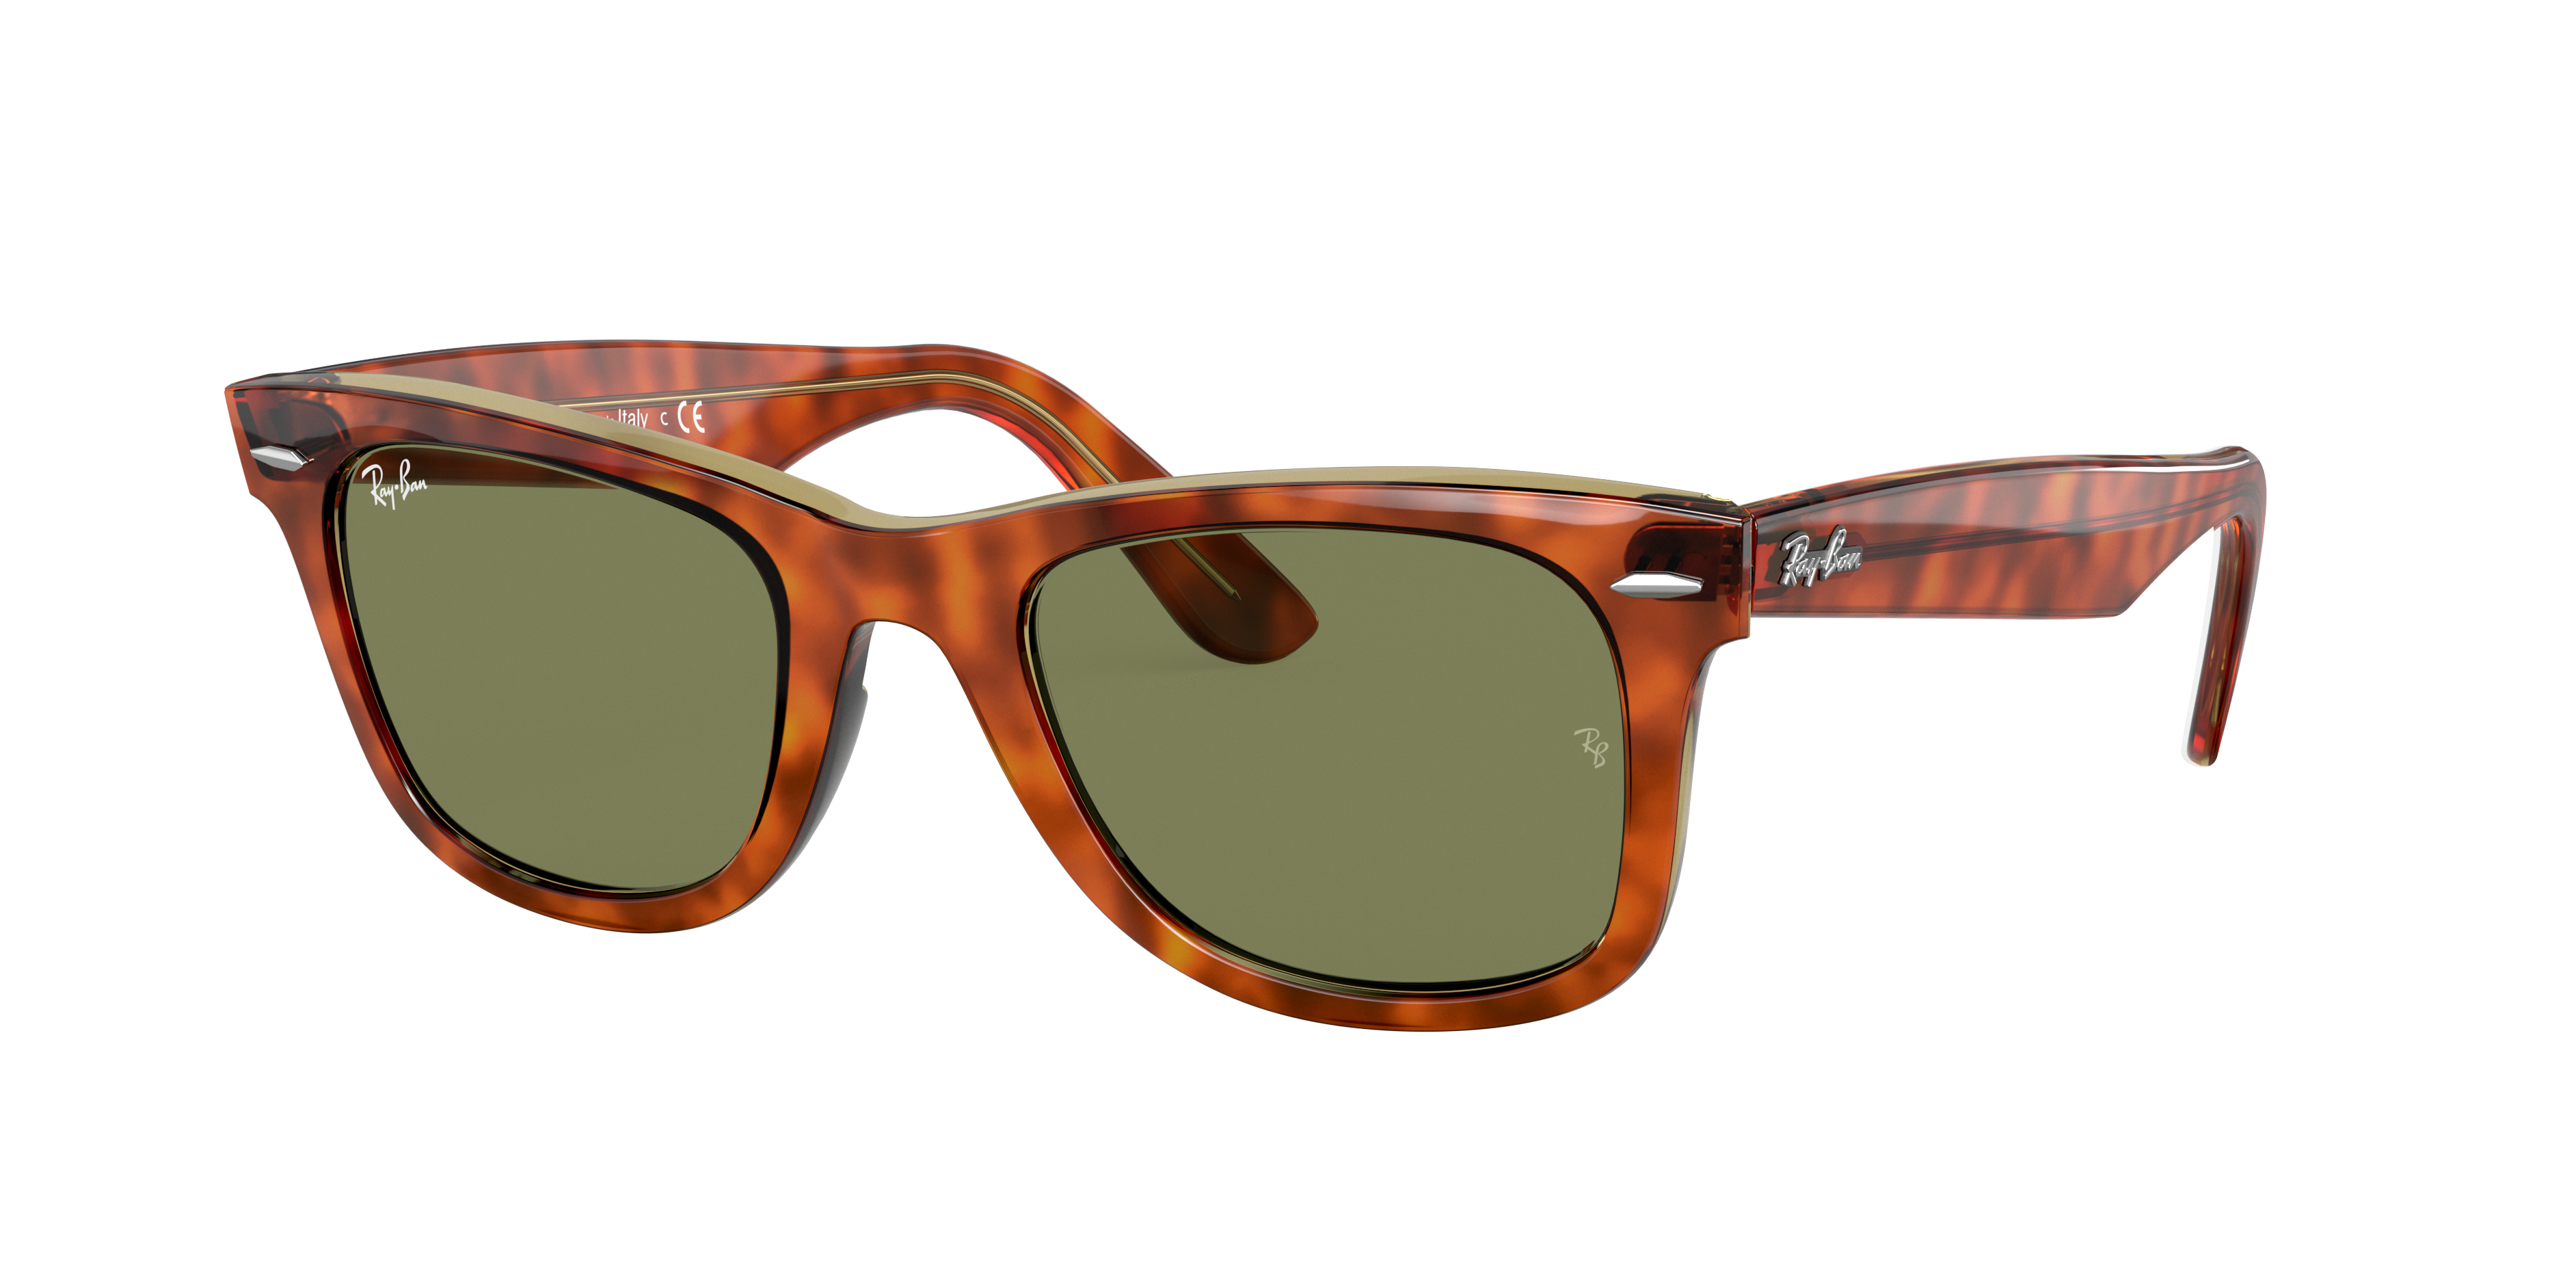 Original Wayfarer Bicolor Sunglasses in Tartaruga and Verde-claro | Ray-Ban®